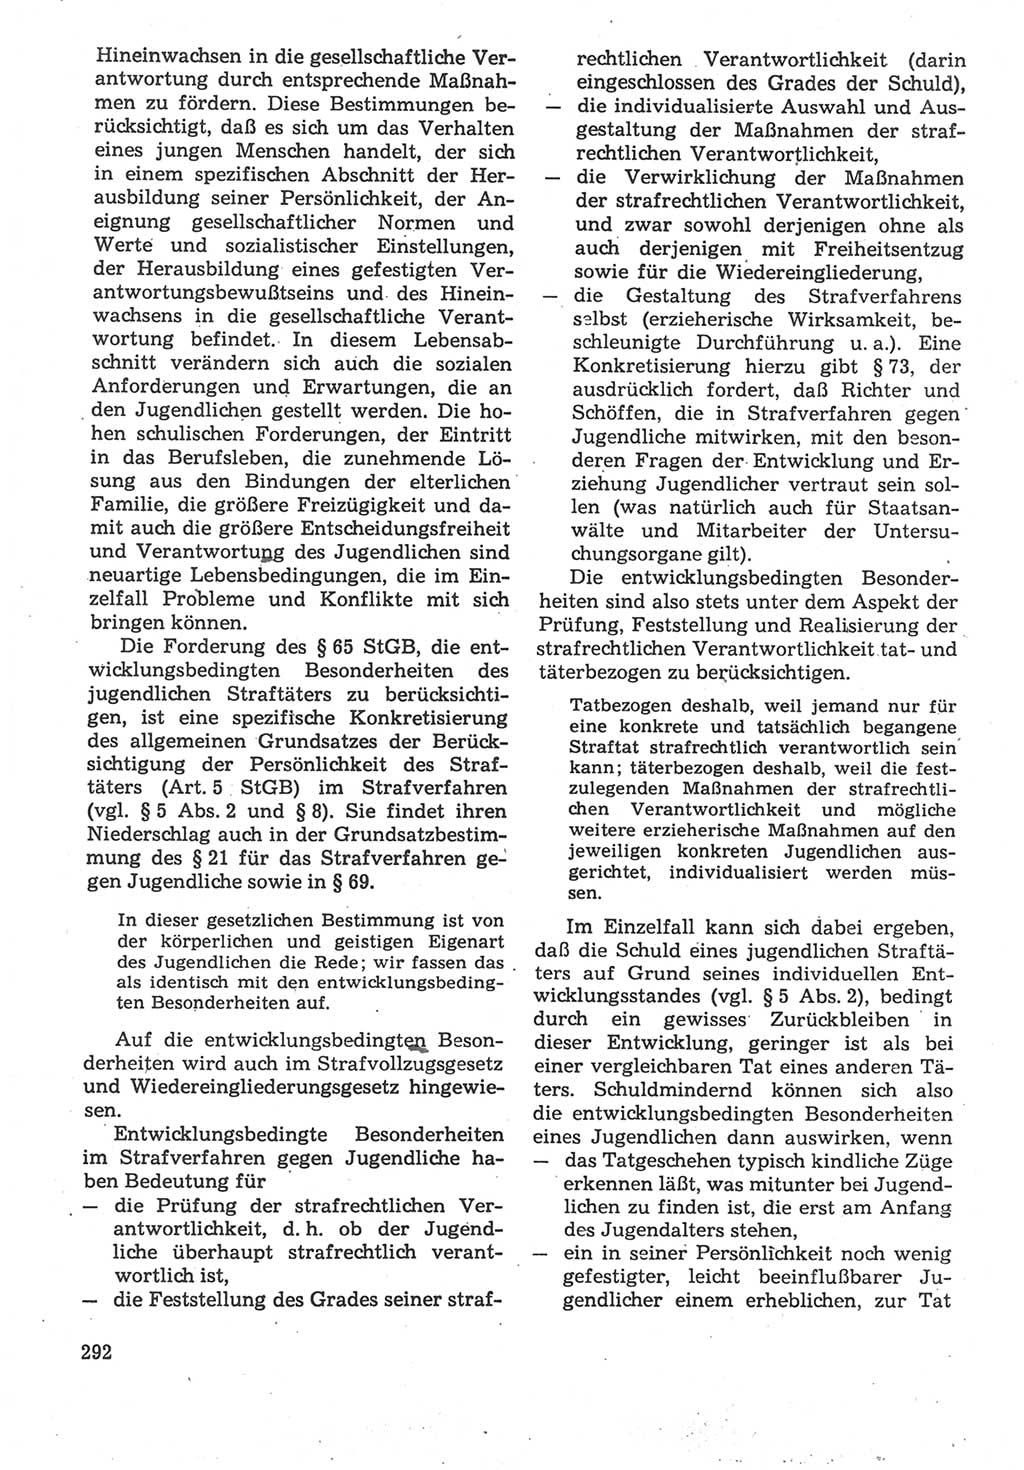 Strafverfahrensrecht [Deutsche Demokratische Republik (DDR)], Lehrbuch 1987, Seite 292 (Strafverf.-R. DDR Lb. 1987, S. 292)